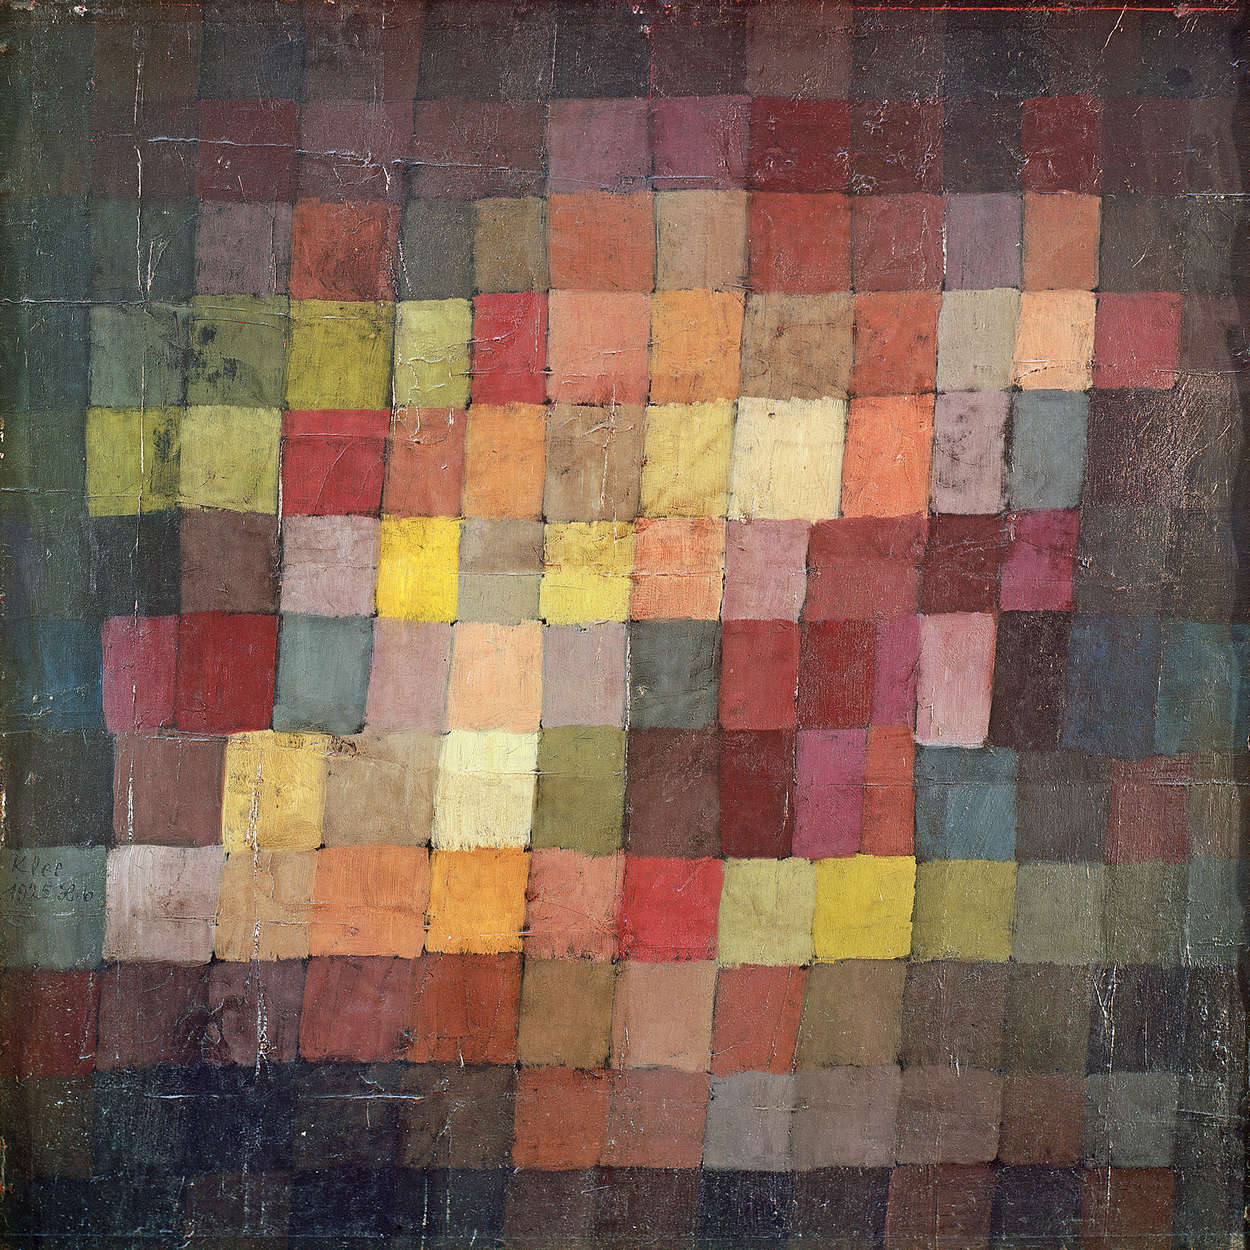             Fotomurali "Old Harmony" di Paul Klee
        